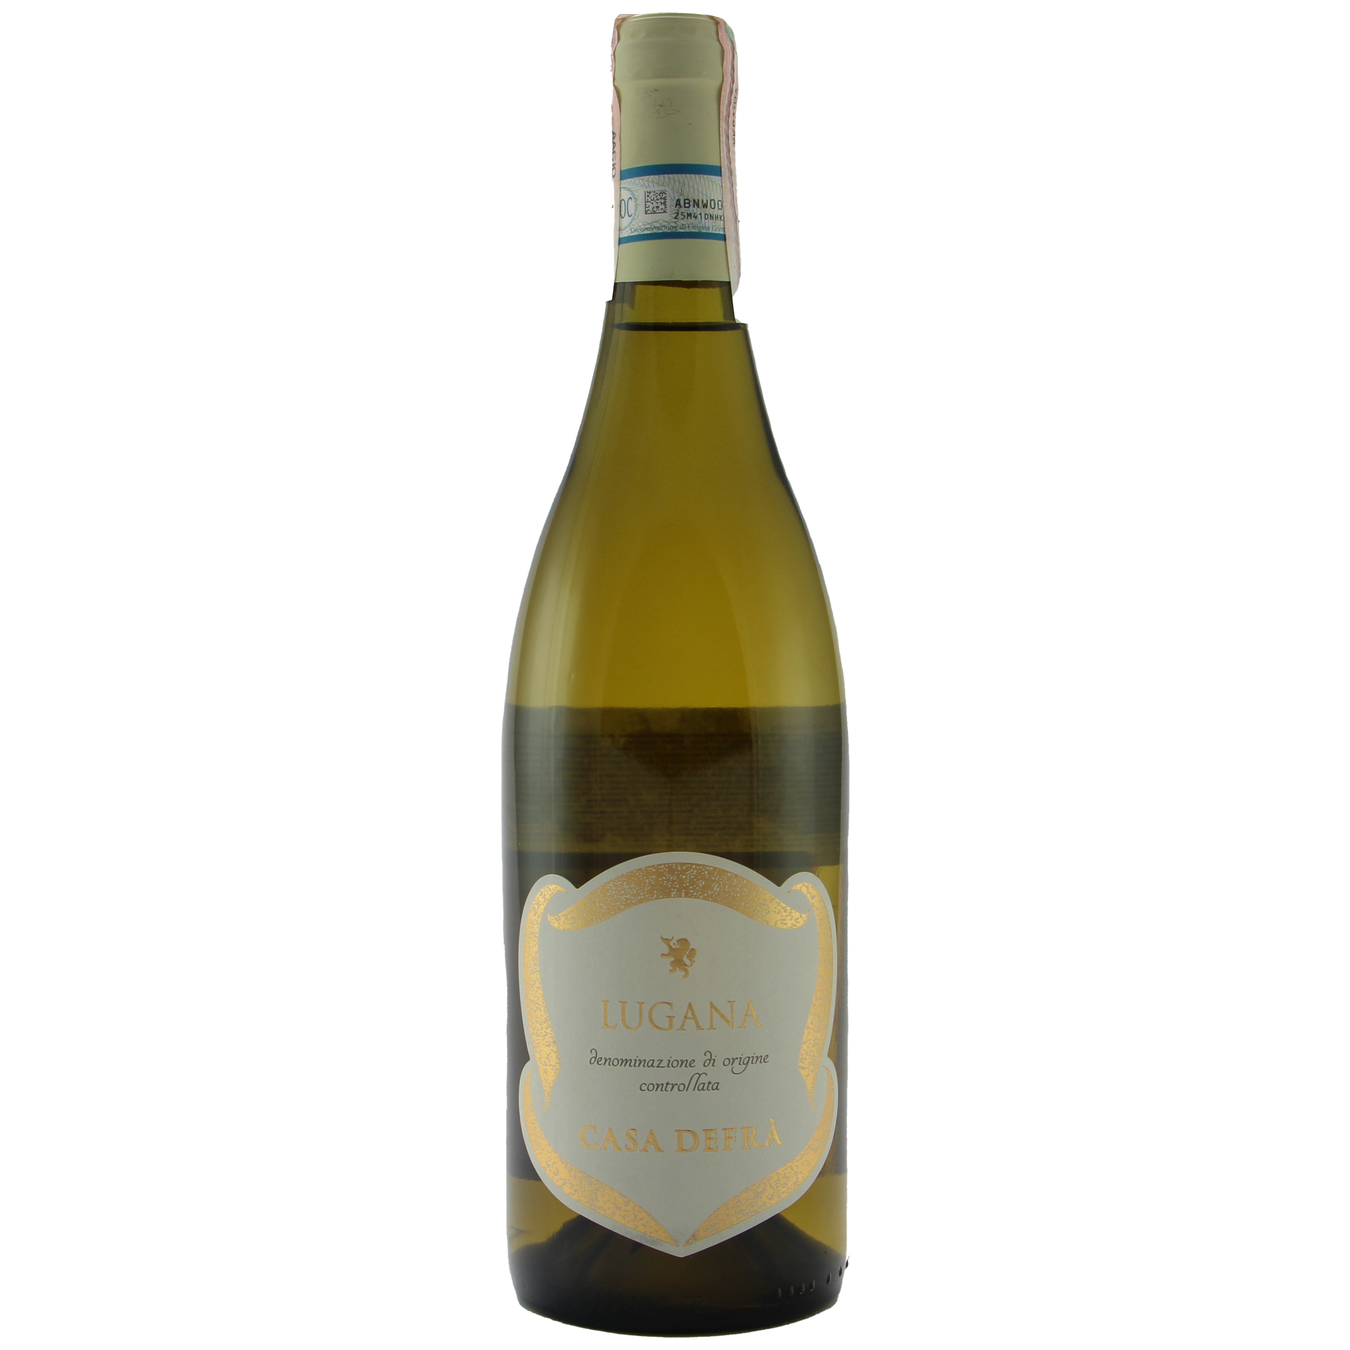 Вино Casa Defra Lugana белое сухое 12,5% 0,75л